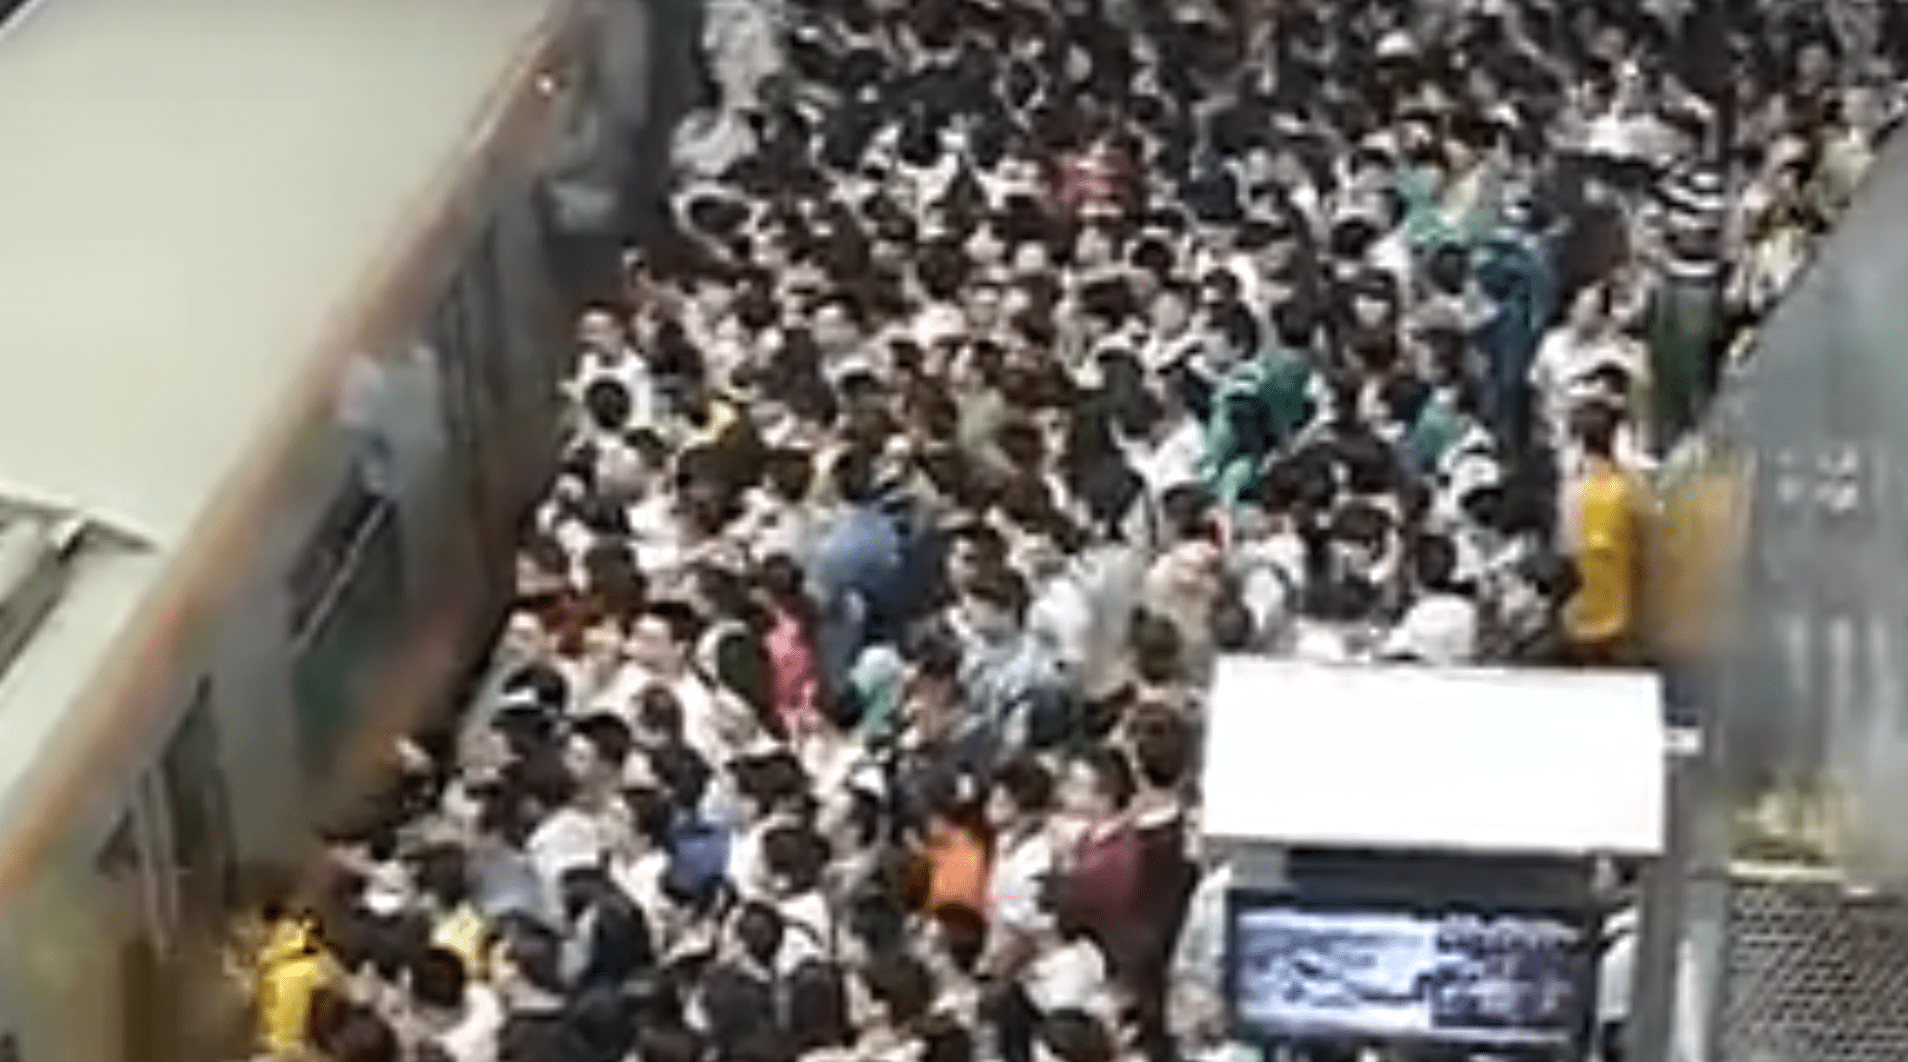 Час пик в японском метро